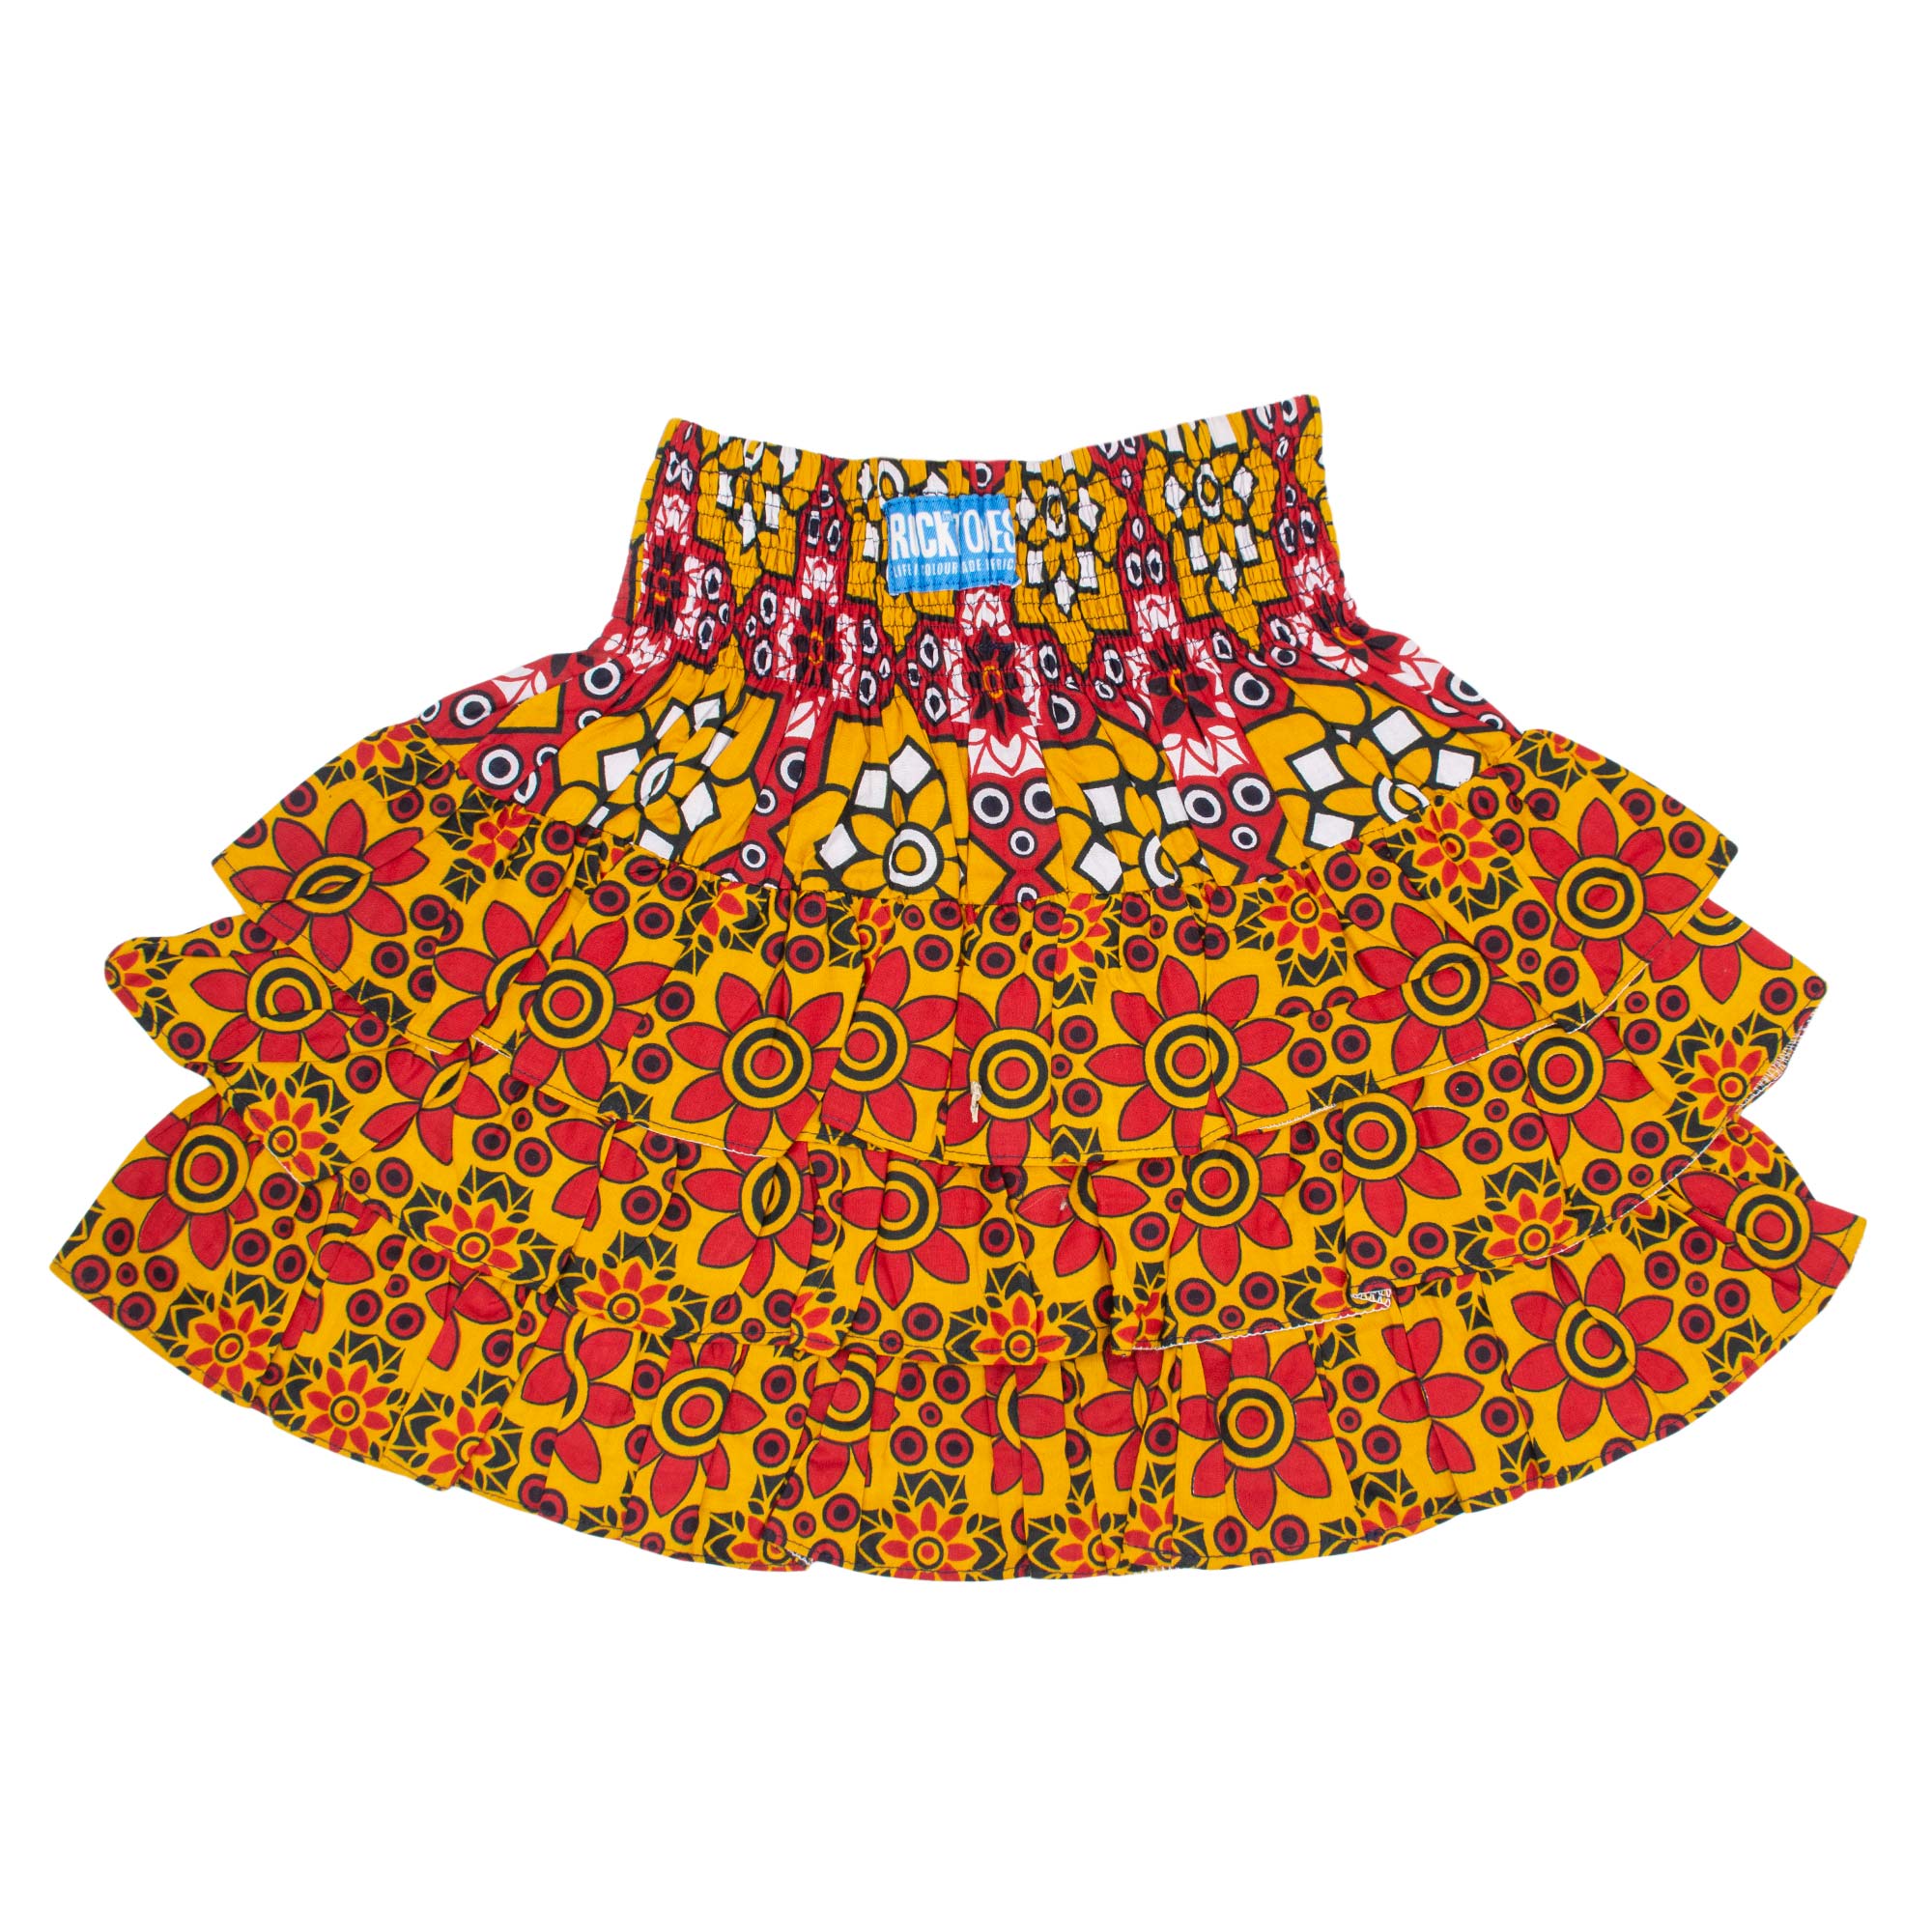 Girl's RaRa Skirt